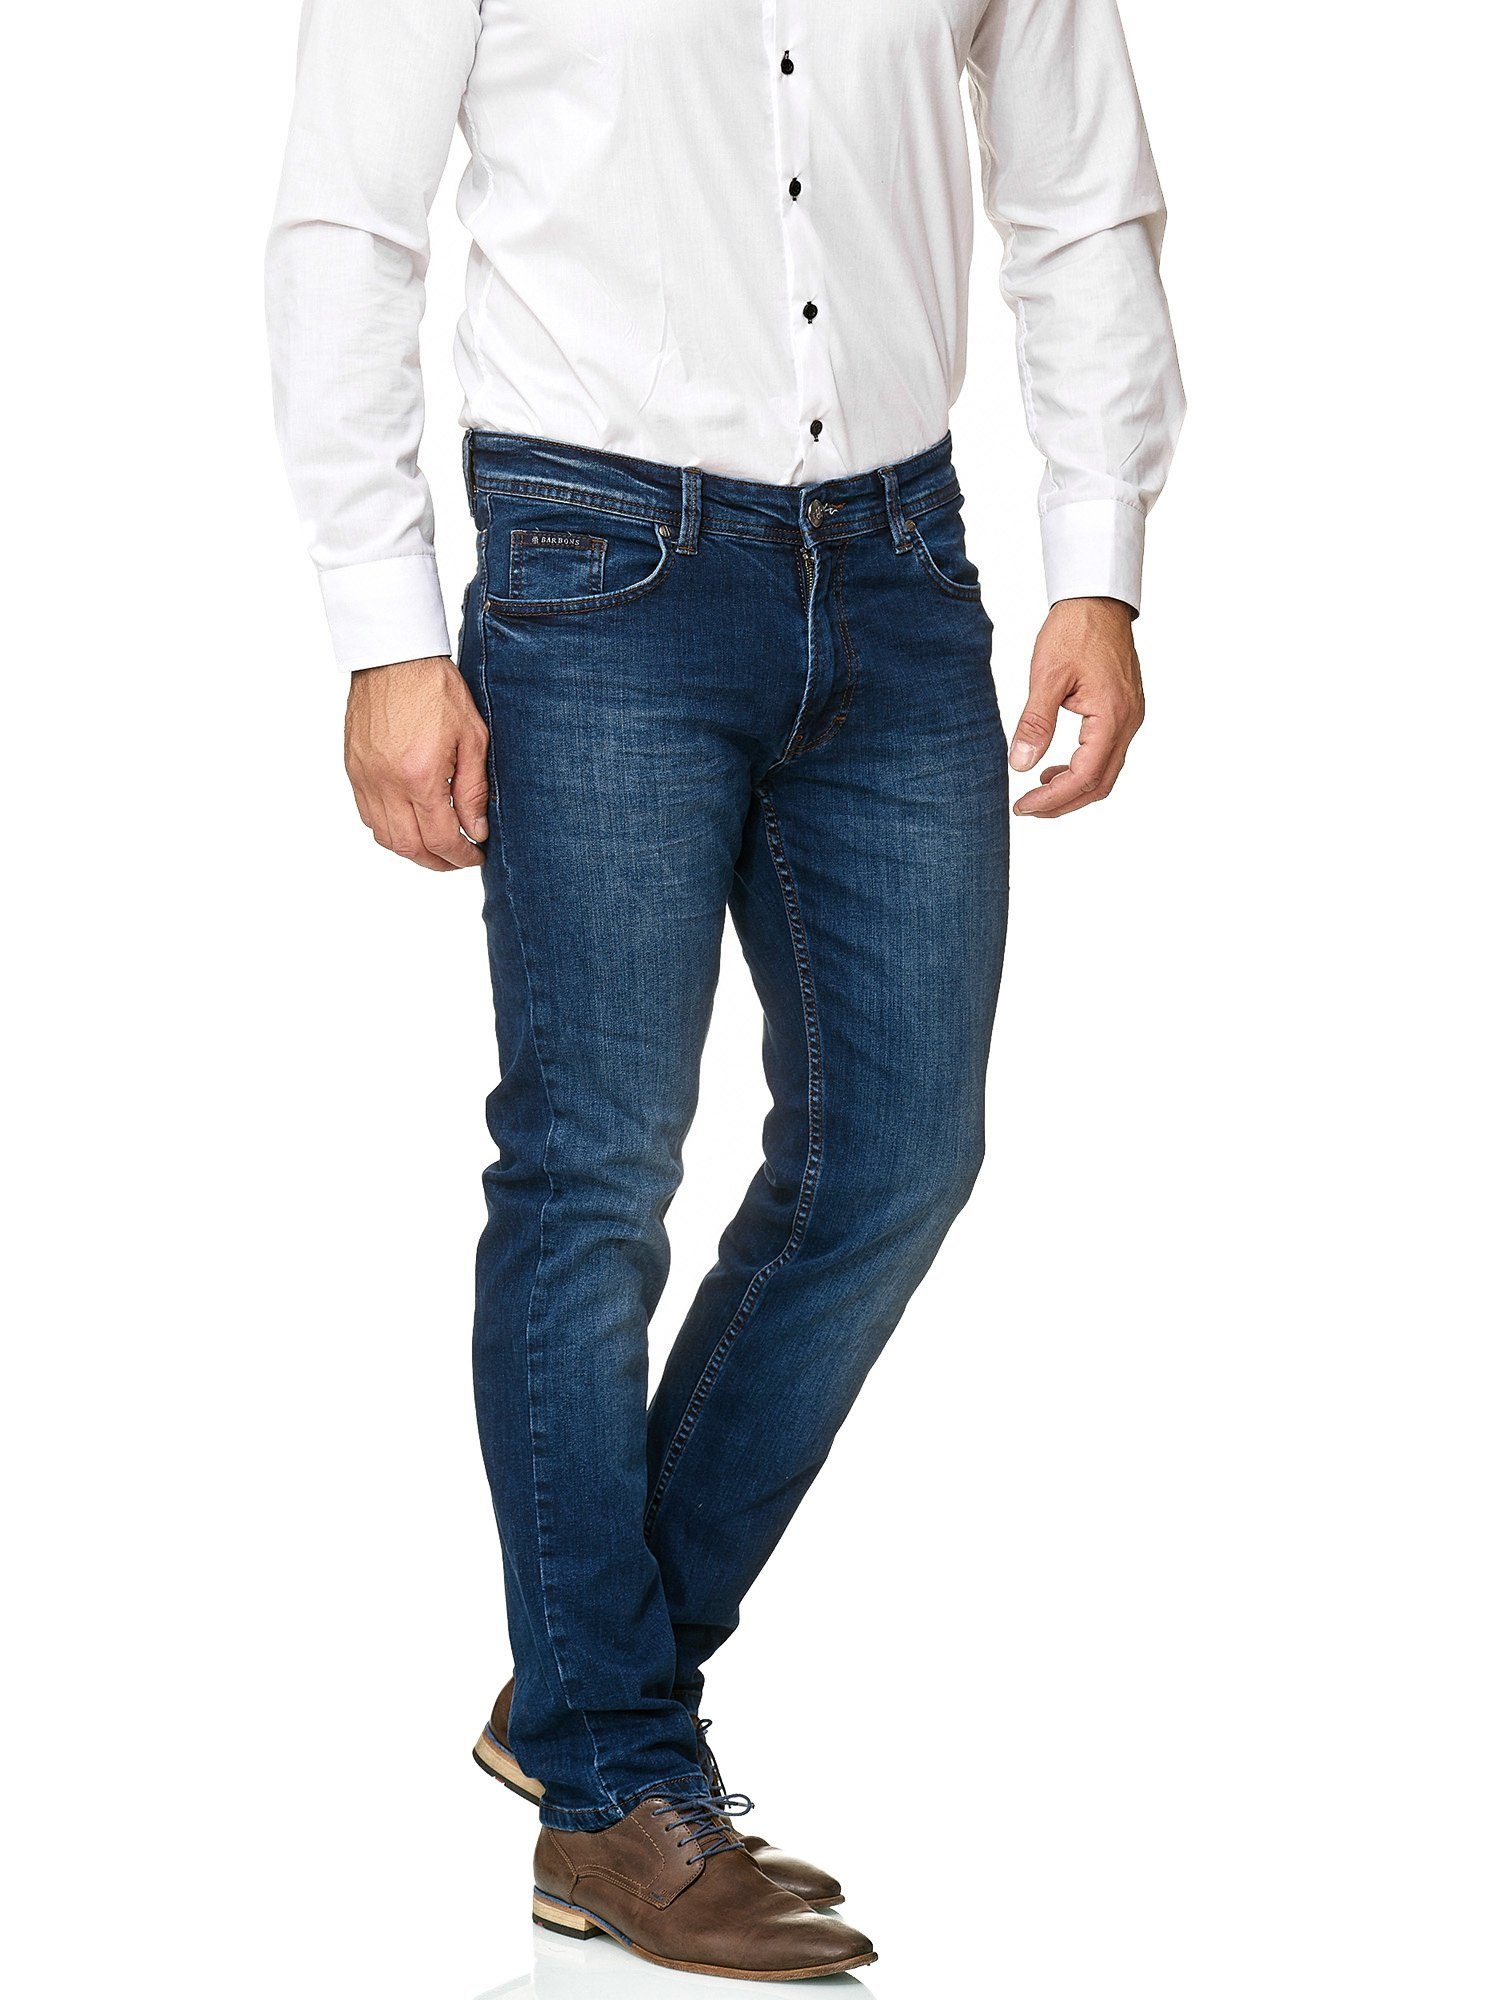 BARBONS 5-Pocket-Jeans Herren 02-Blau Regular Design Fit 5-Pocket